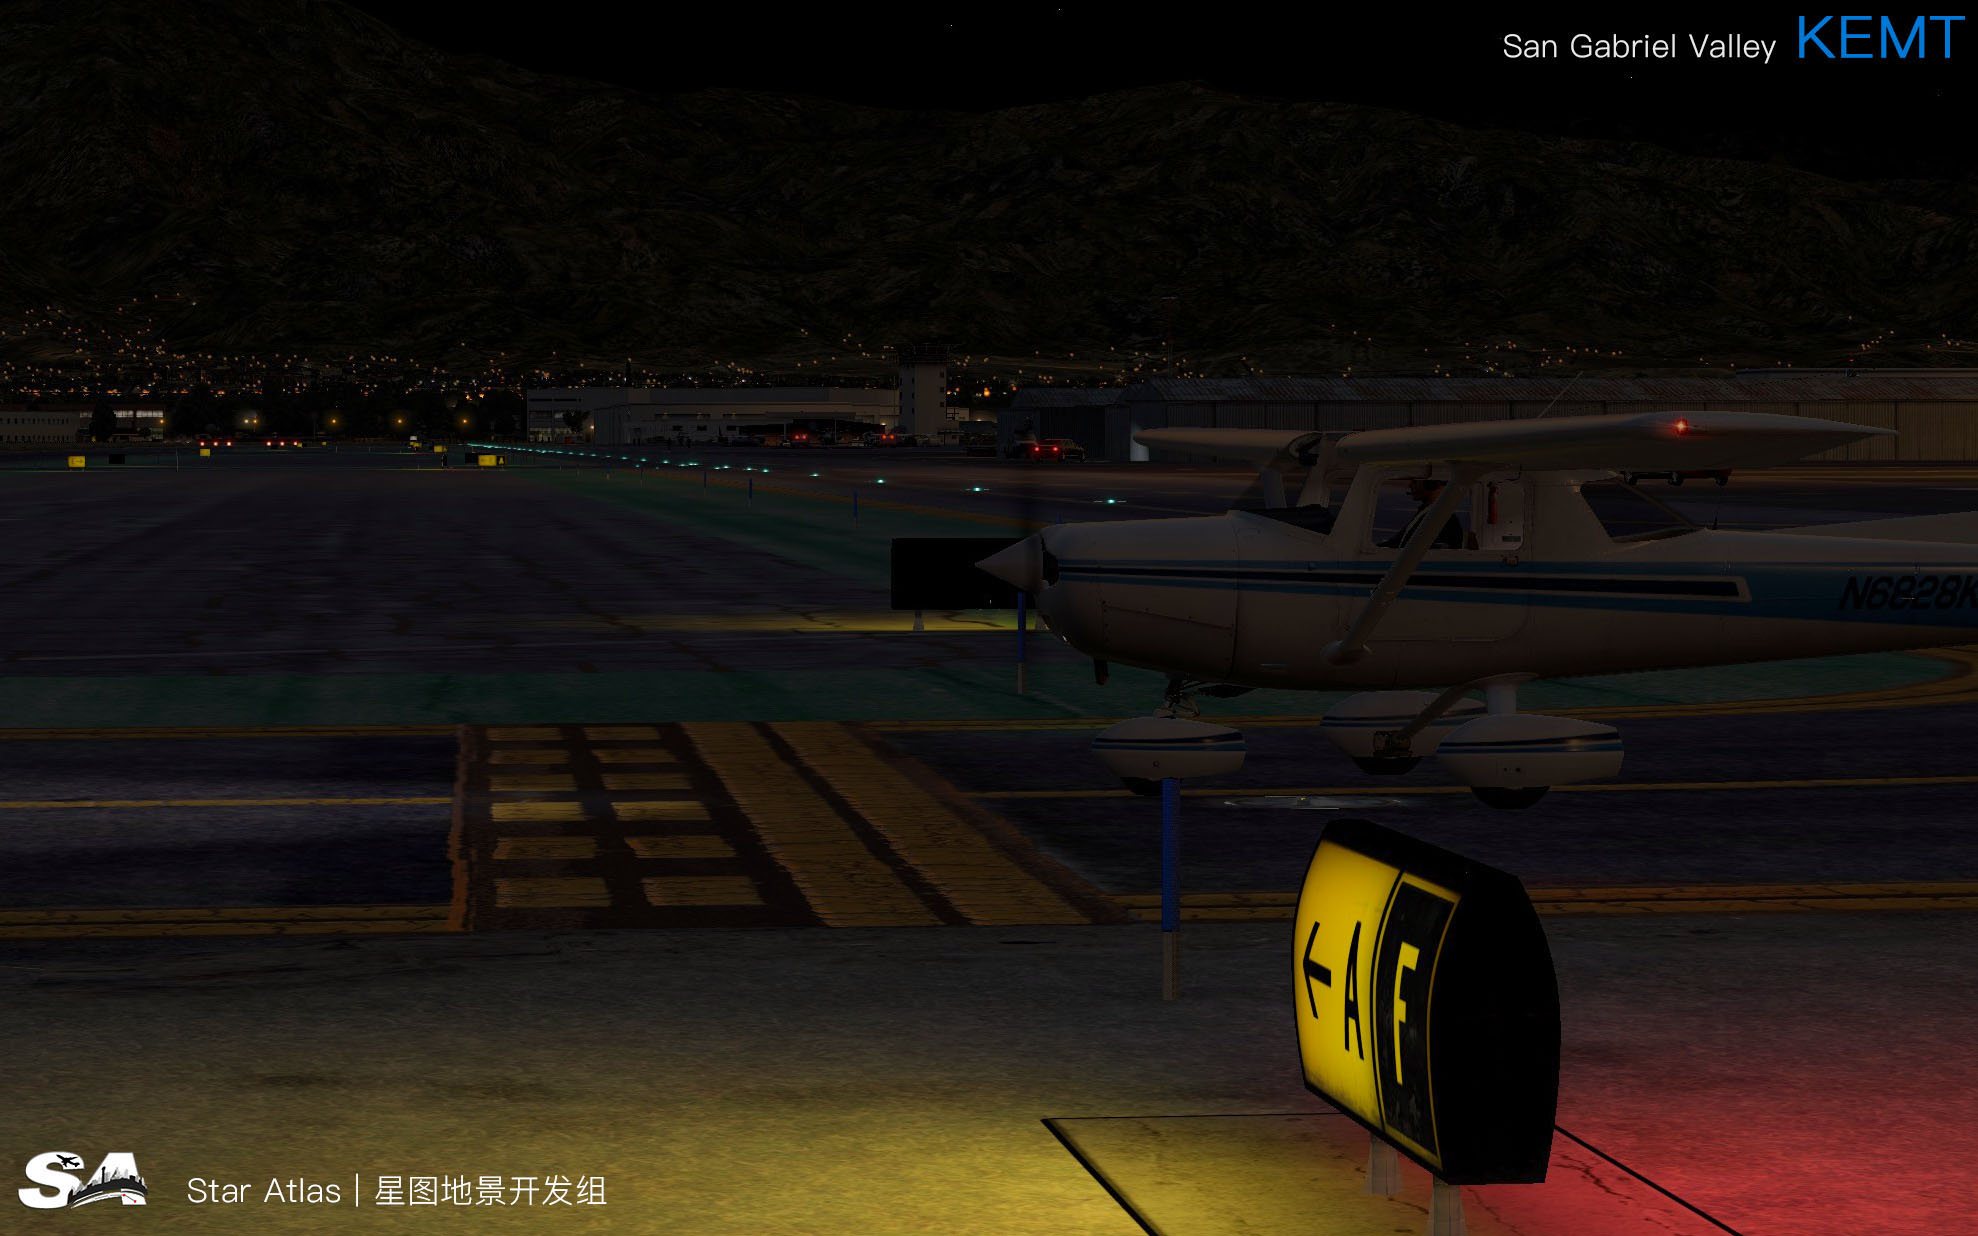 【X-Plane】KEMT-圣盖博谷机场 HD 1.0-8818 